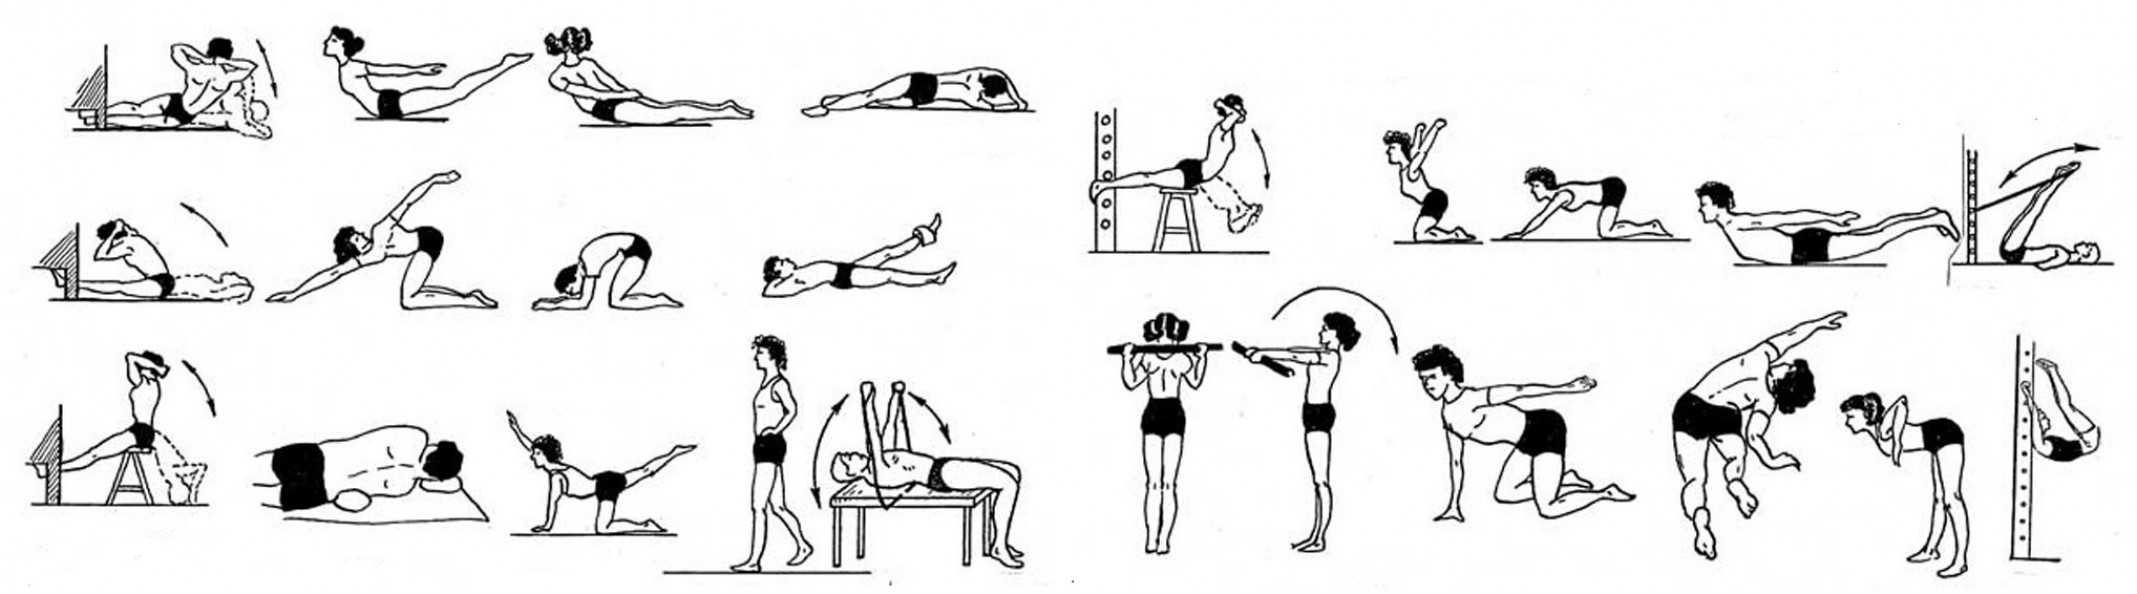 Упражнения для укрепления позвоночника. Упражнения для укрепления мышц позвоночника. Упражнения для укрепления мышц спины лечебная физкультура. Упражнения для укрепления мышц позвоночника при грыже. Лечебная гимнастика для укрепления мышц спины ЛФК.